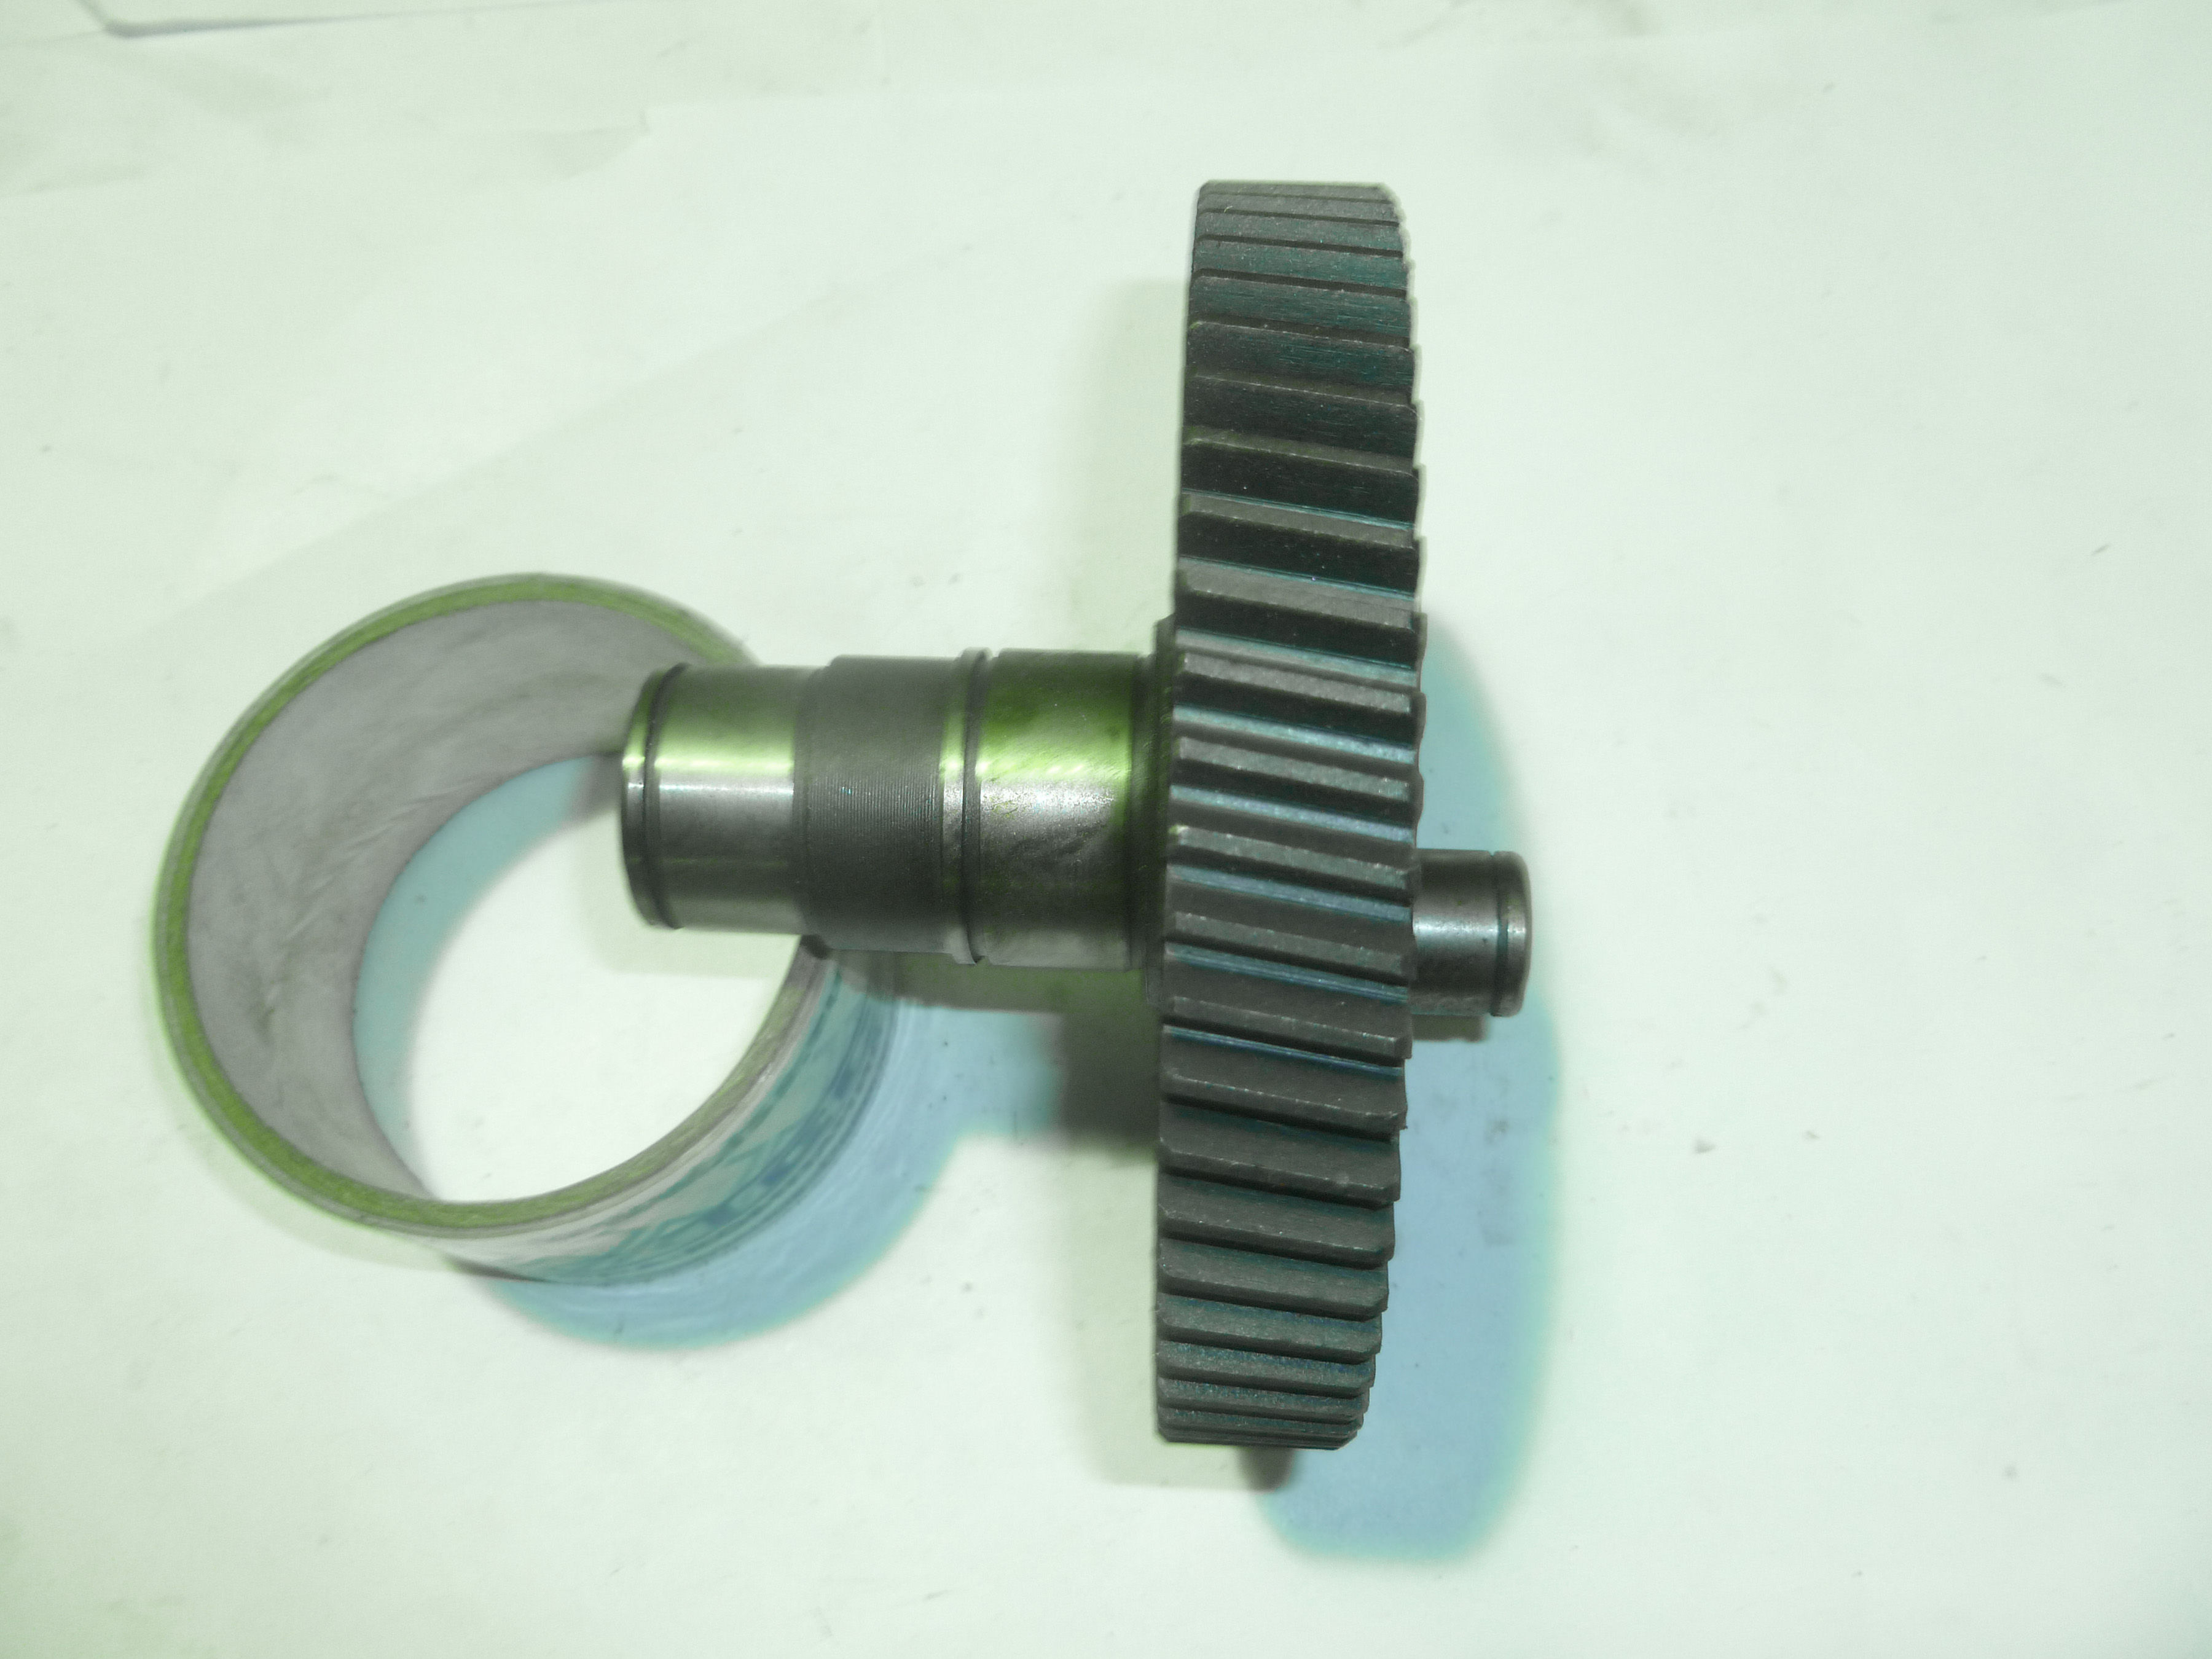 Шестерня HCD 80C,90B(D=133х18 мм,Z =64)/Crankshaft gear